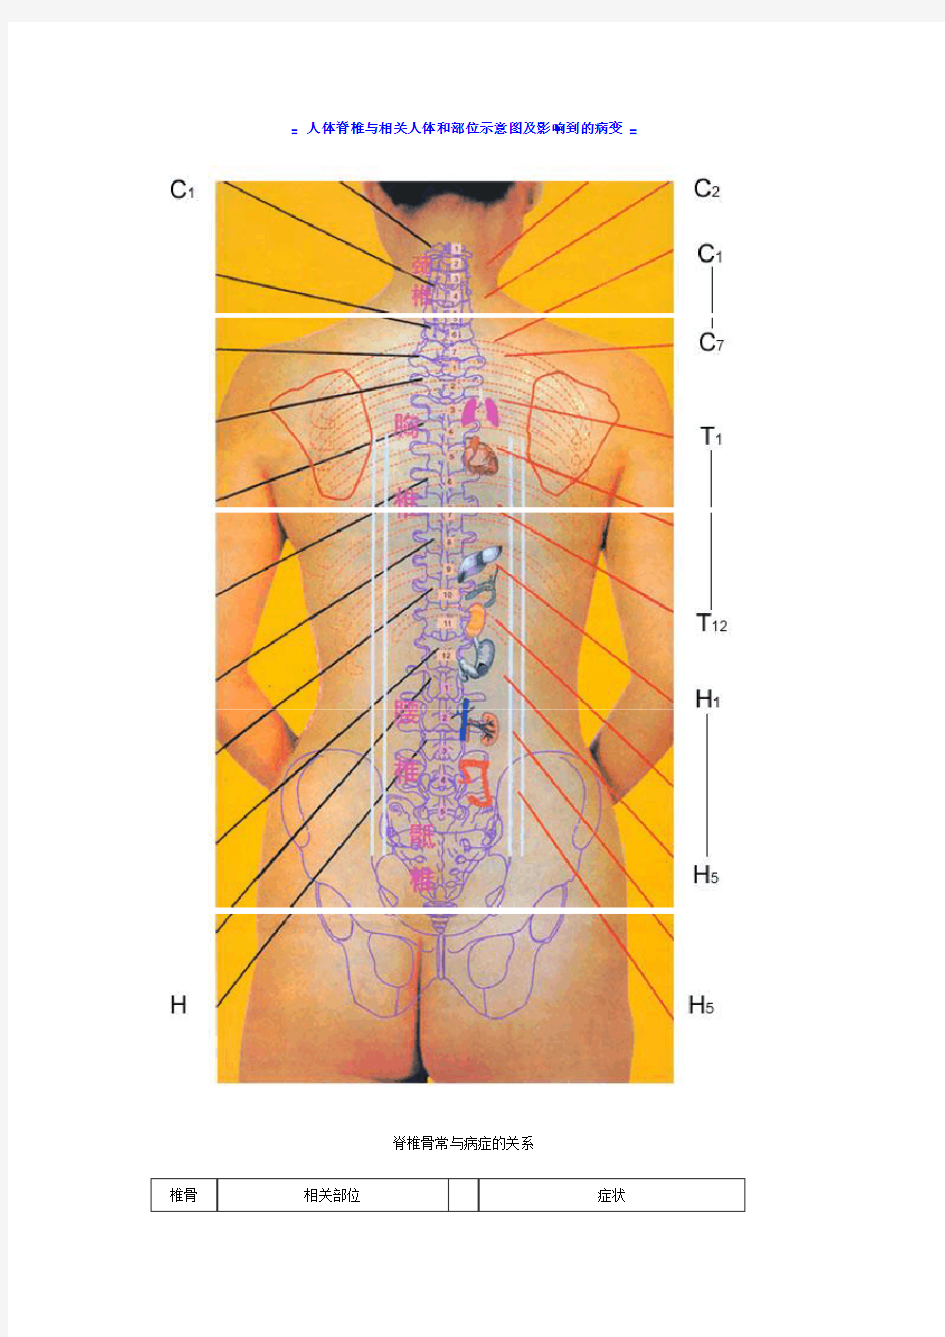 人体脊椎与相关人体和部位示意图及影响到的病变